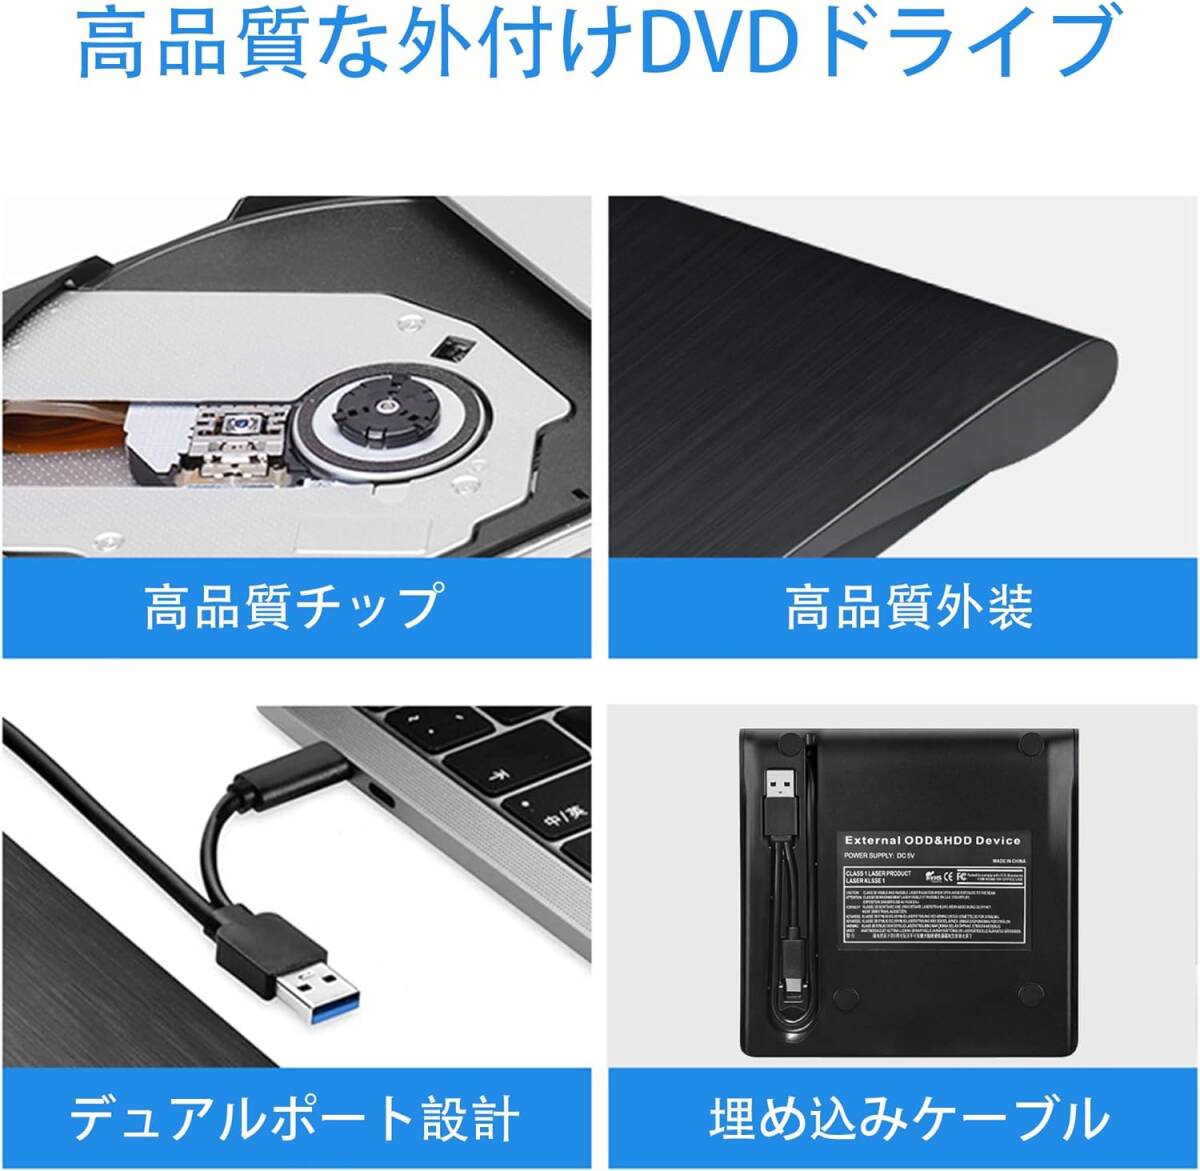 KIMOCA 外付け DVDドライブ 極静音 CD 高速 USB 3.0&Type-Cデュアルポート 外付けCDドライブ 読み出し&書き込み CDドライブ 外付け 